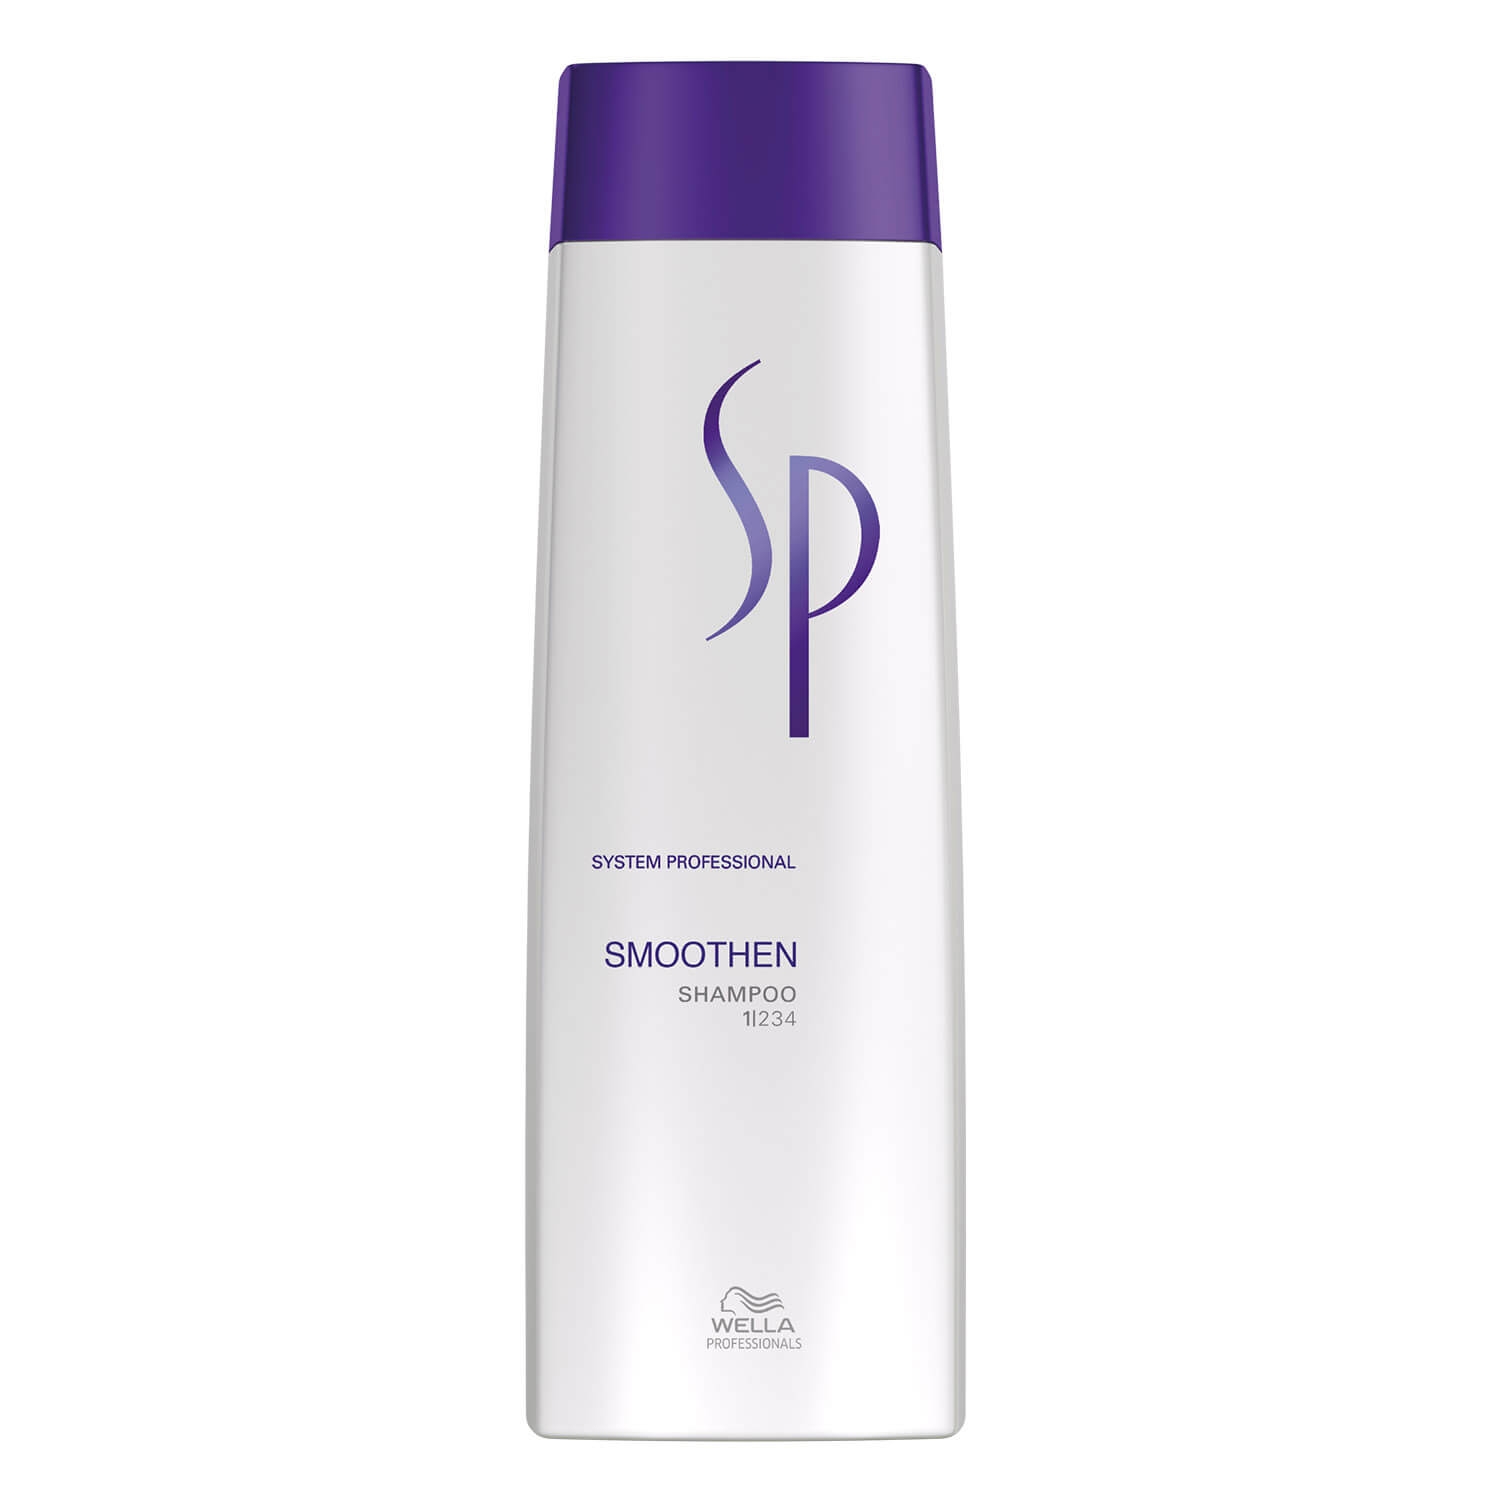 Produktbild von SP Smoothen - Shampoo